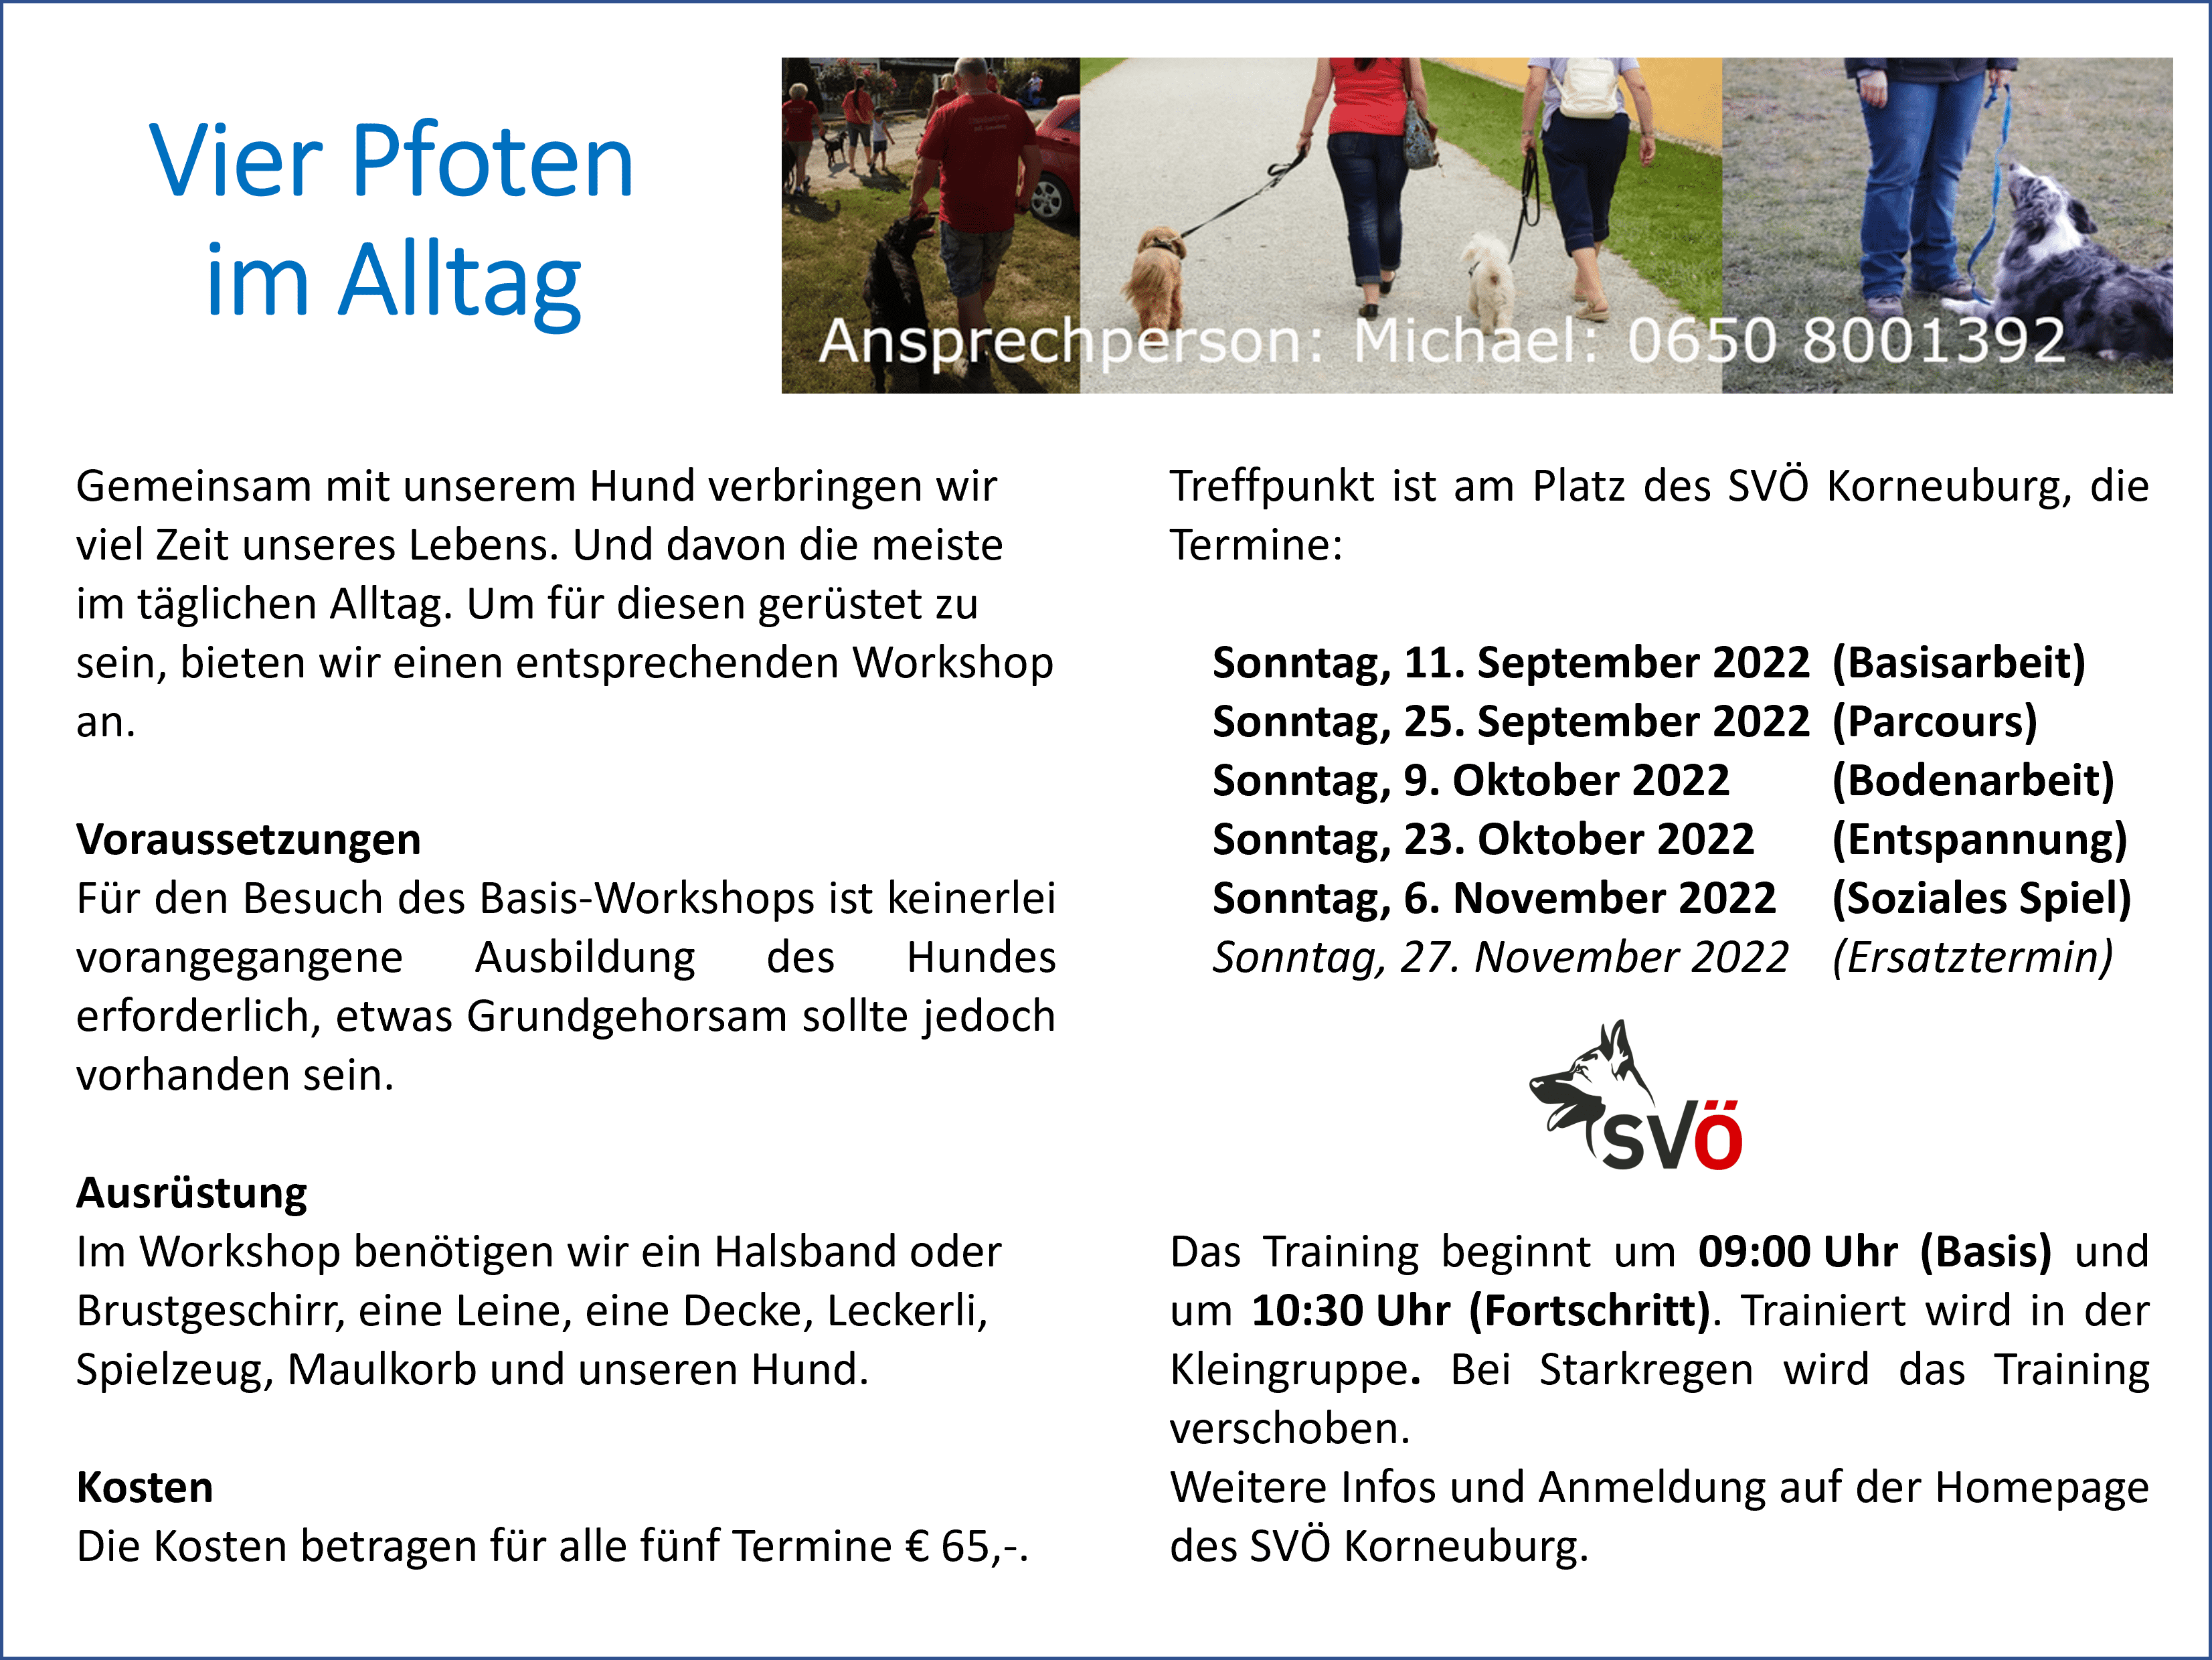 Alltagstraining beim SVÖ Korneuburg ab September am Sonntag Vormittag